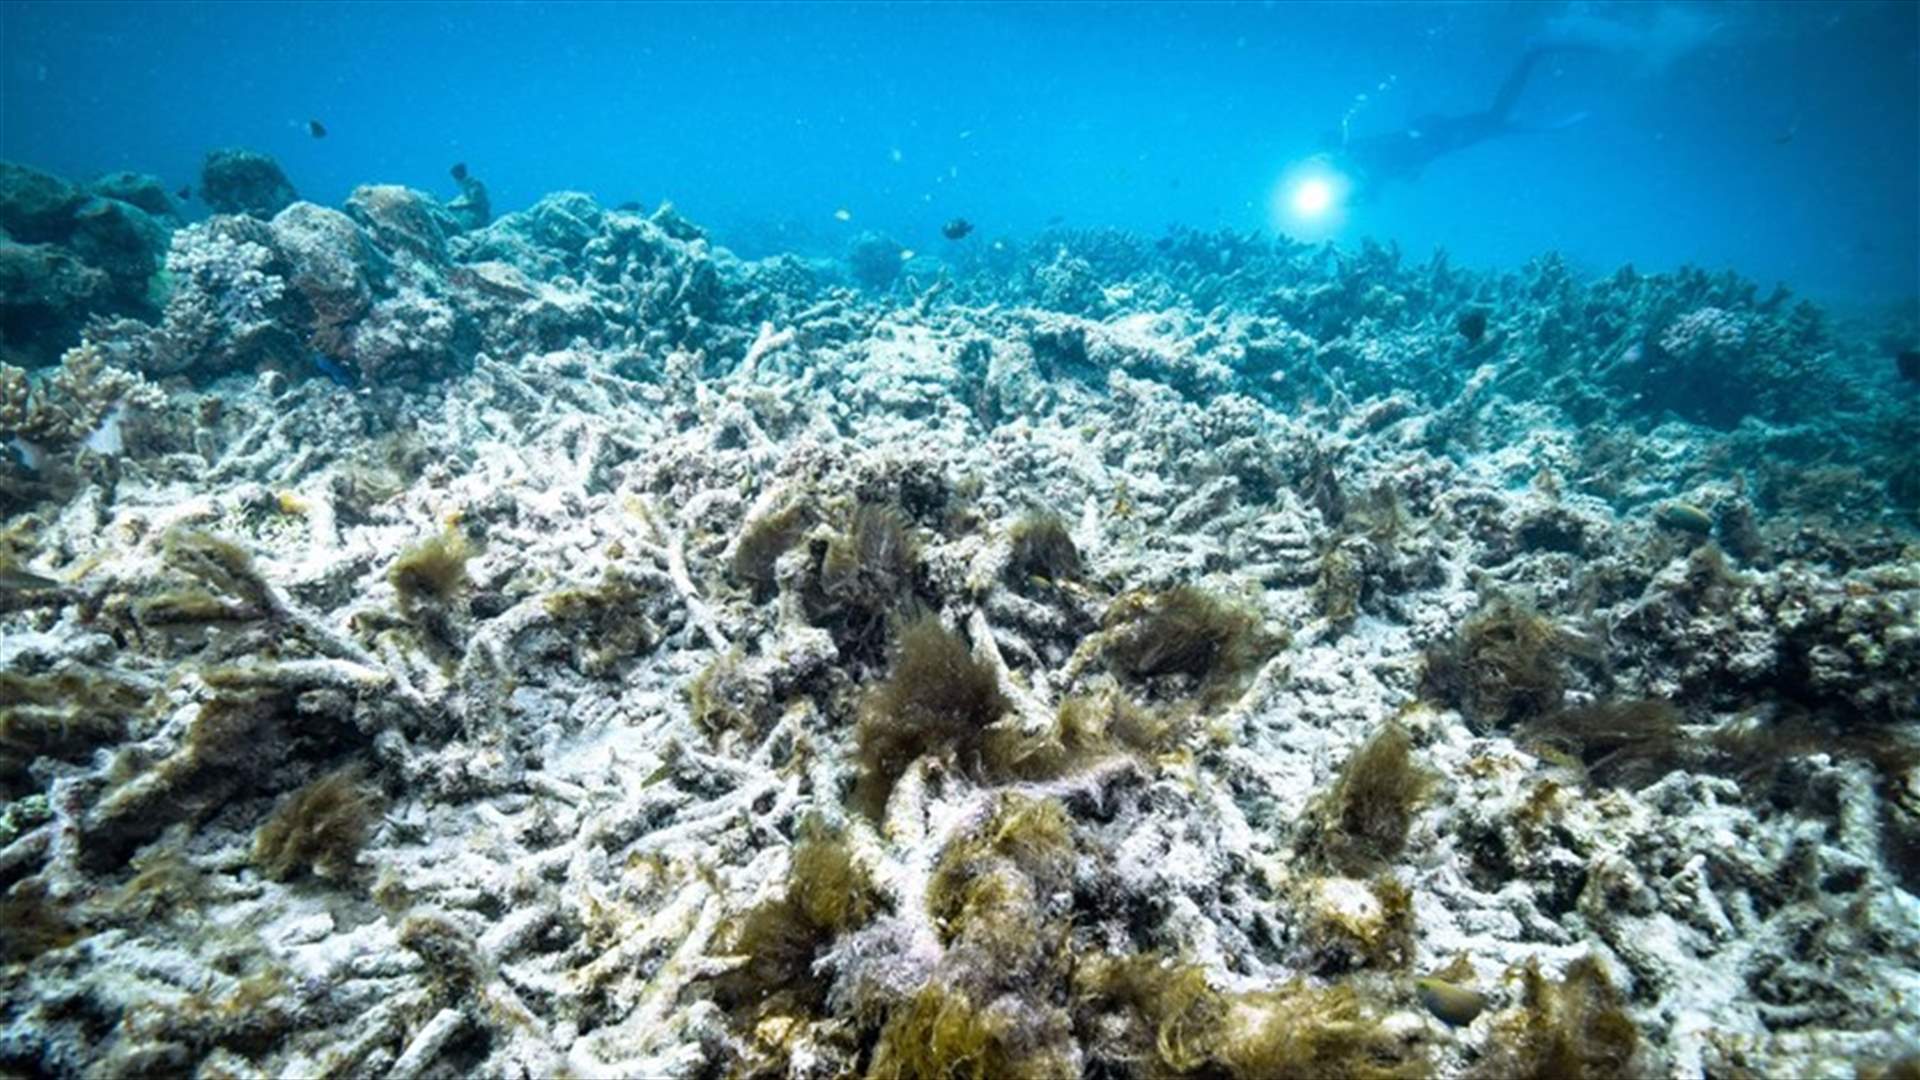 لجنة بالأمم المتحدة توصي بإدراج الحاجز المرجاني العظيم كتراث عالمي معرّض للخطر